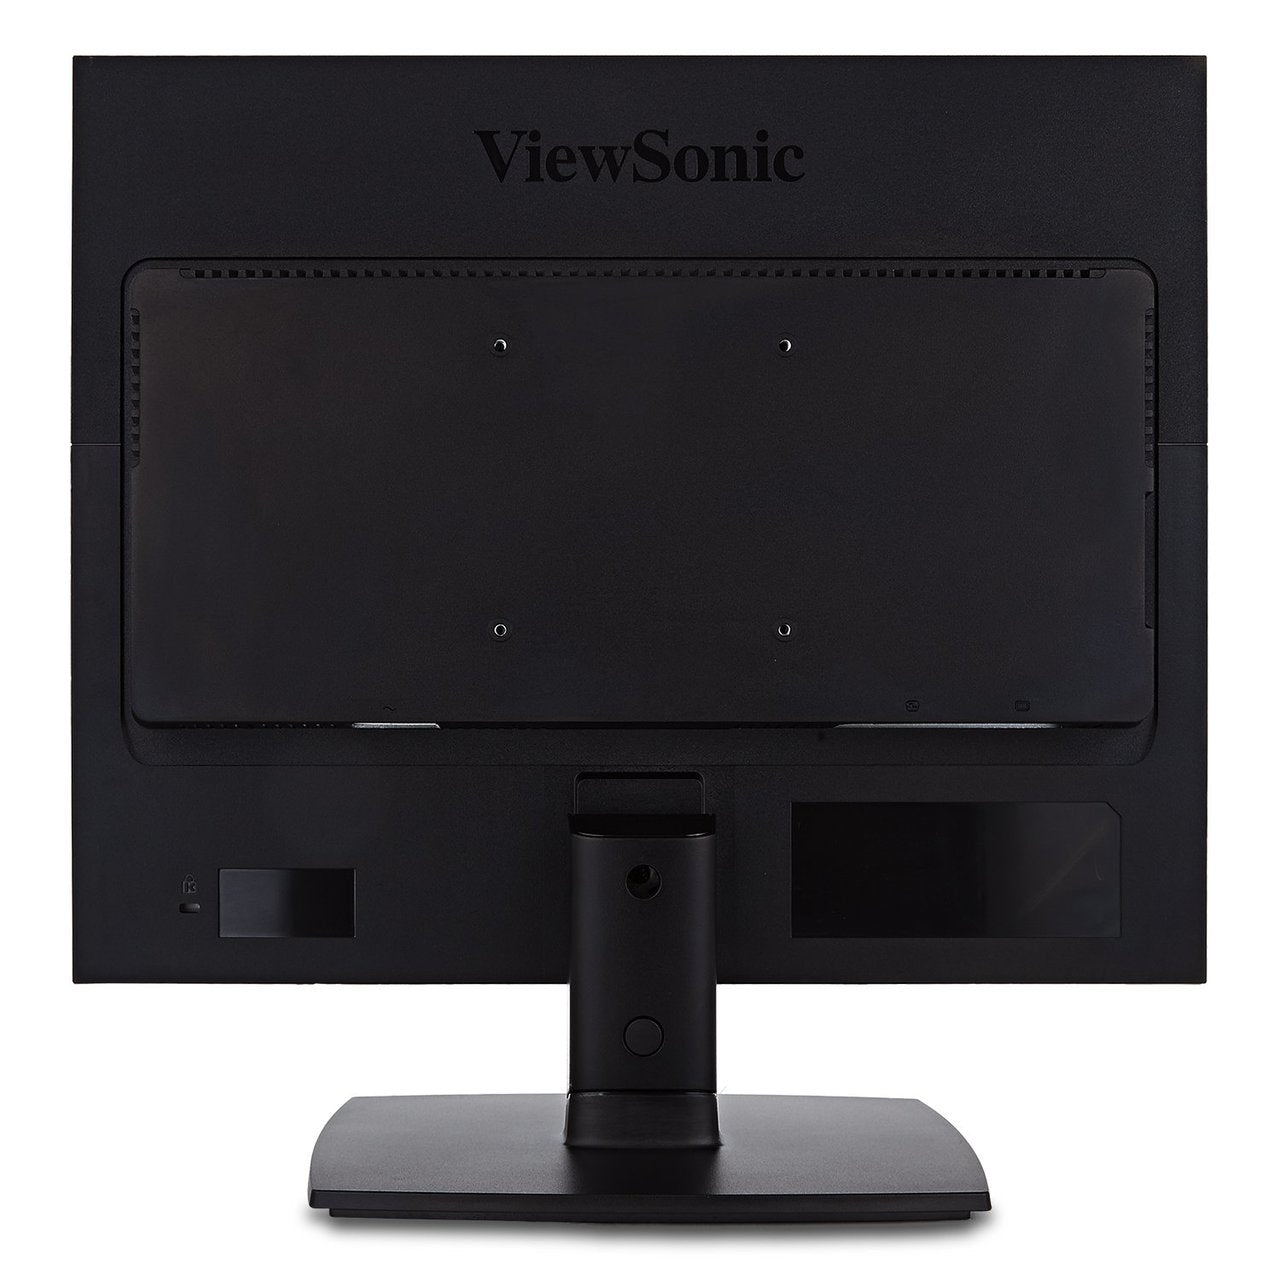 ViewSonic VA951S-R 19" IPS 1024p LED Monitor - C Grade Refurbished